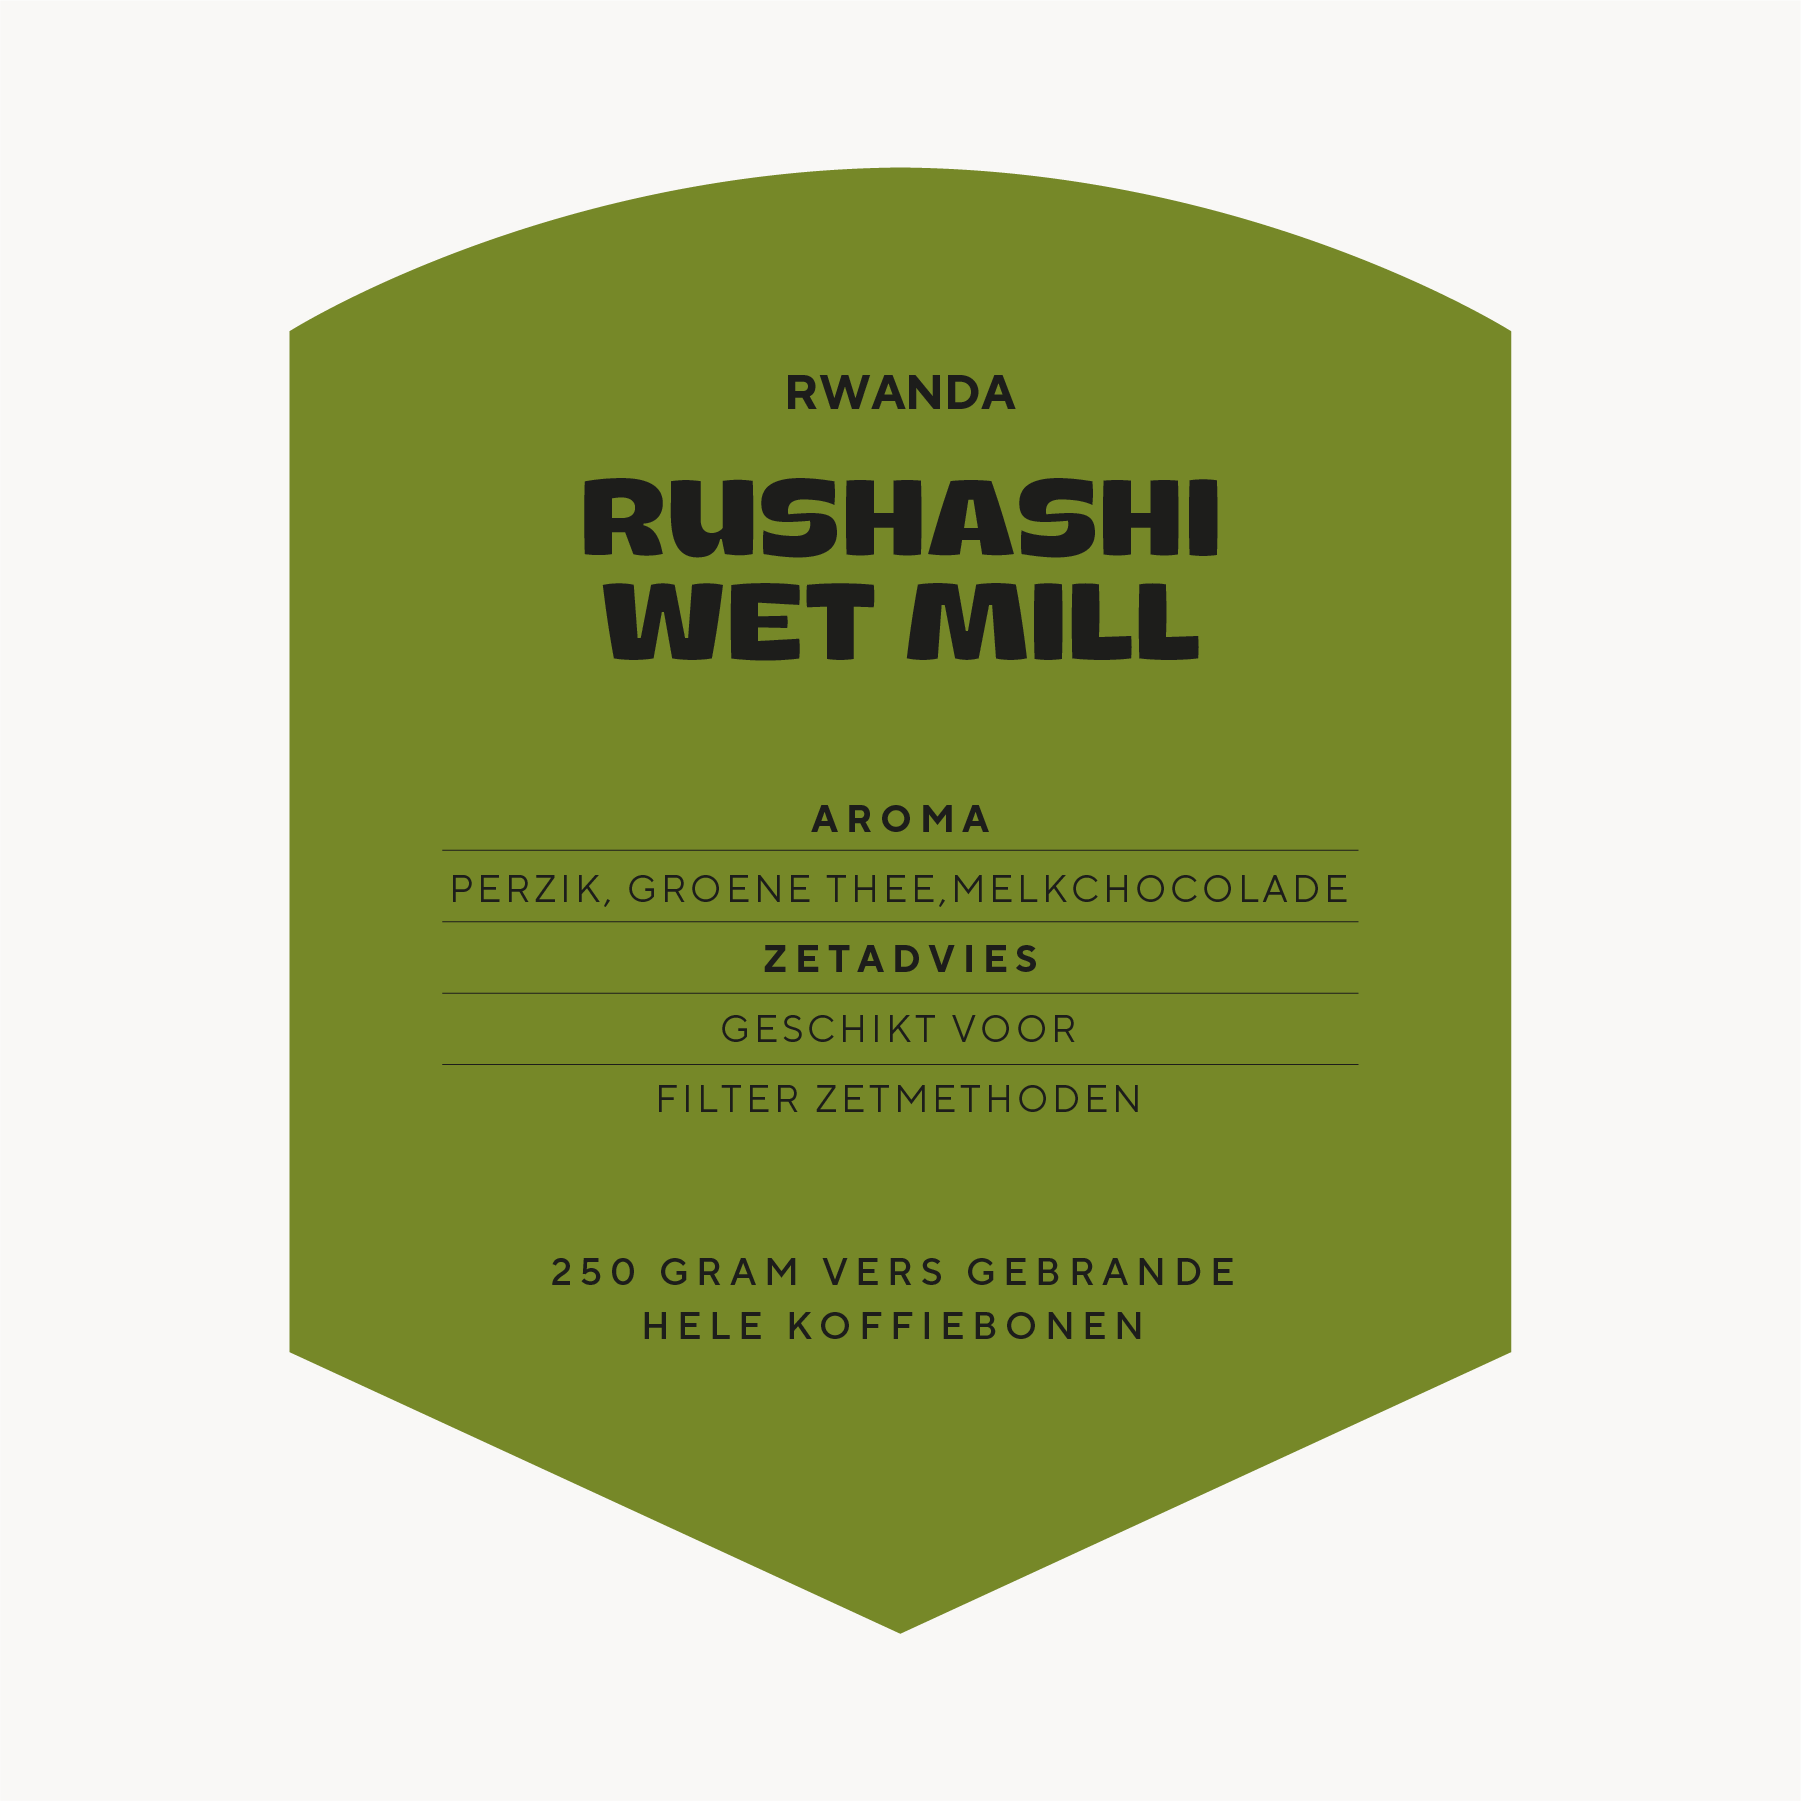 Rwanda Rushashi Wet Mill koffie